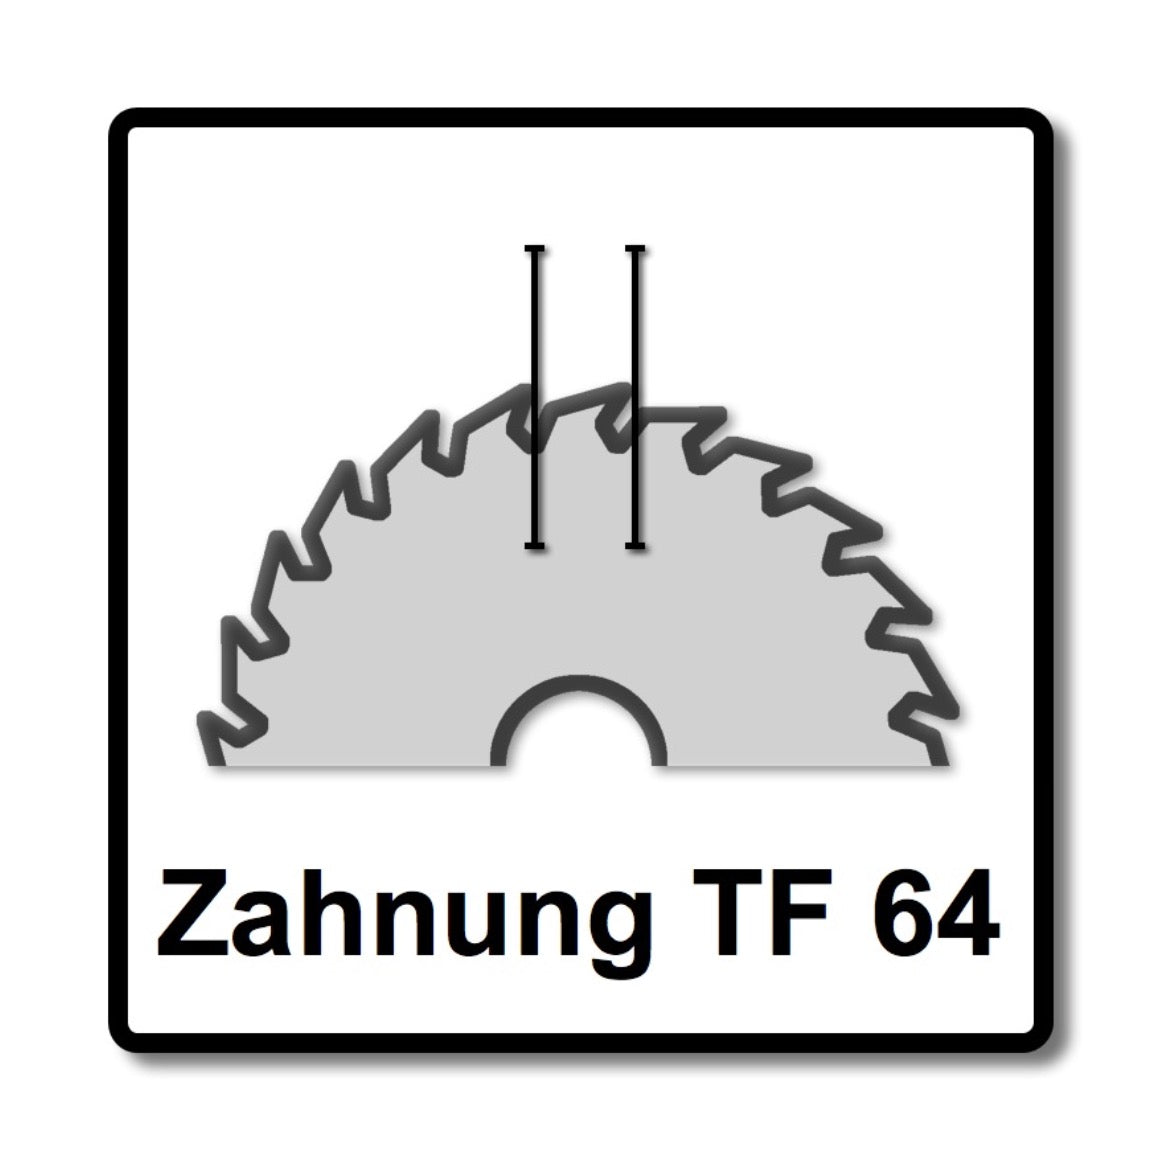 Bosch Kreissägeblatt Standard for Aluminium 216 x 1,6 x 30 mm 64 Zähne –  Toolbrothers